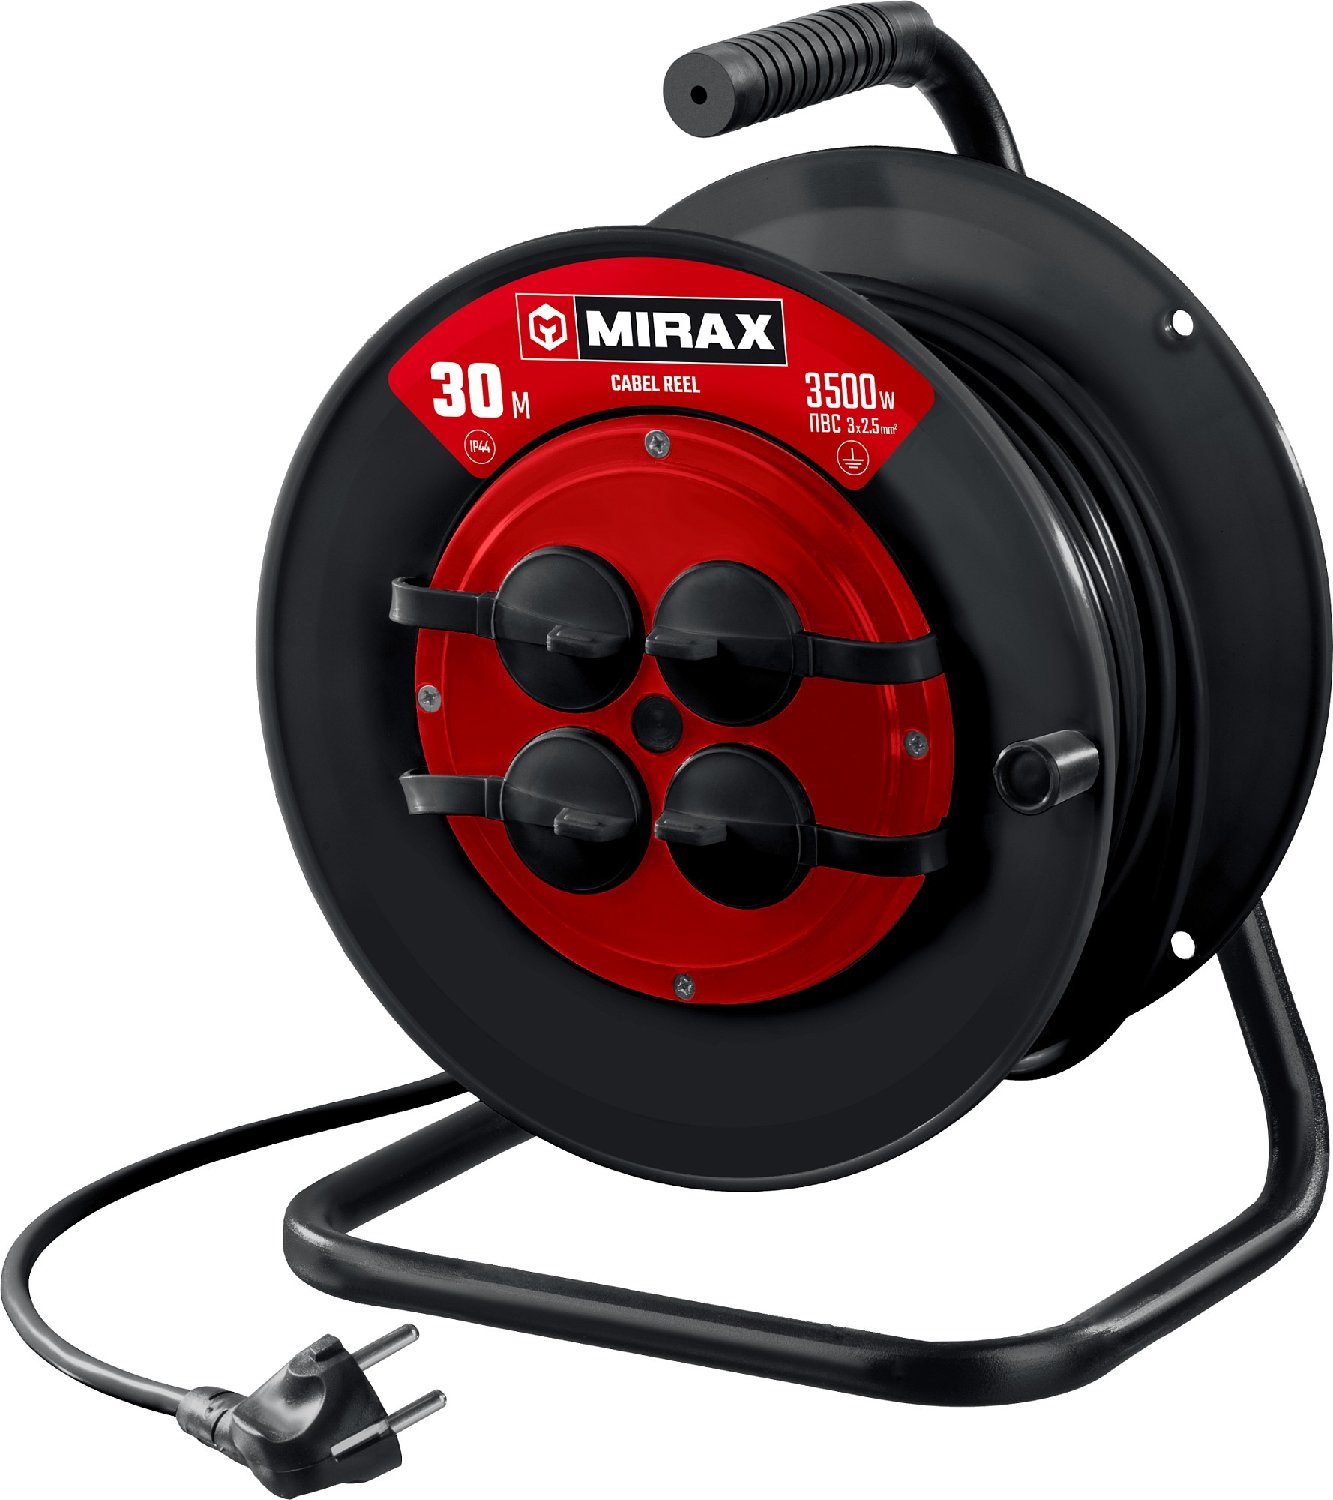     MIRAX  32.5 30 3500 IP44 (55051-30)